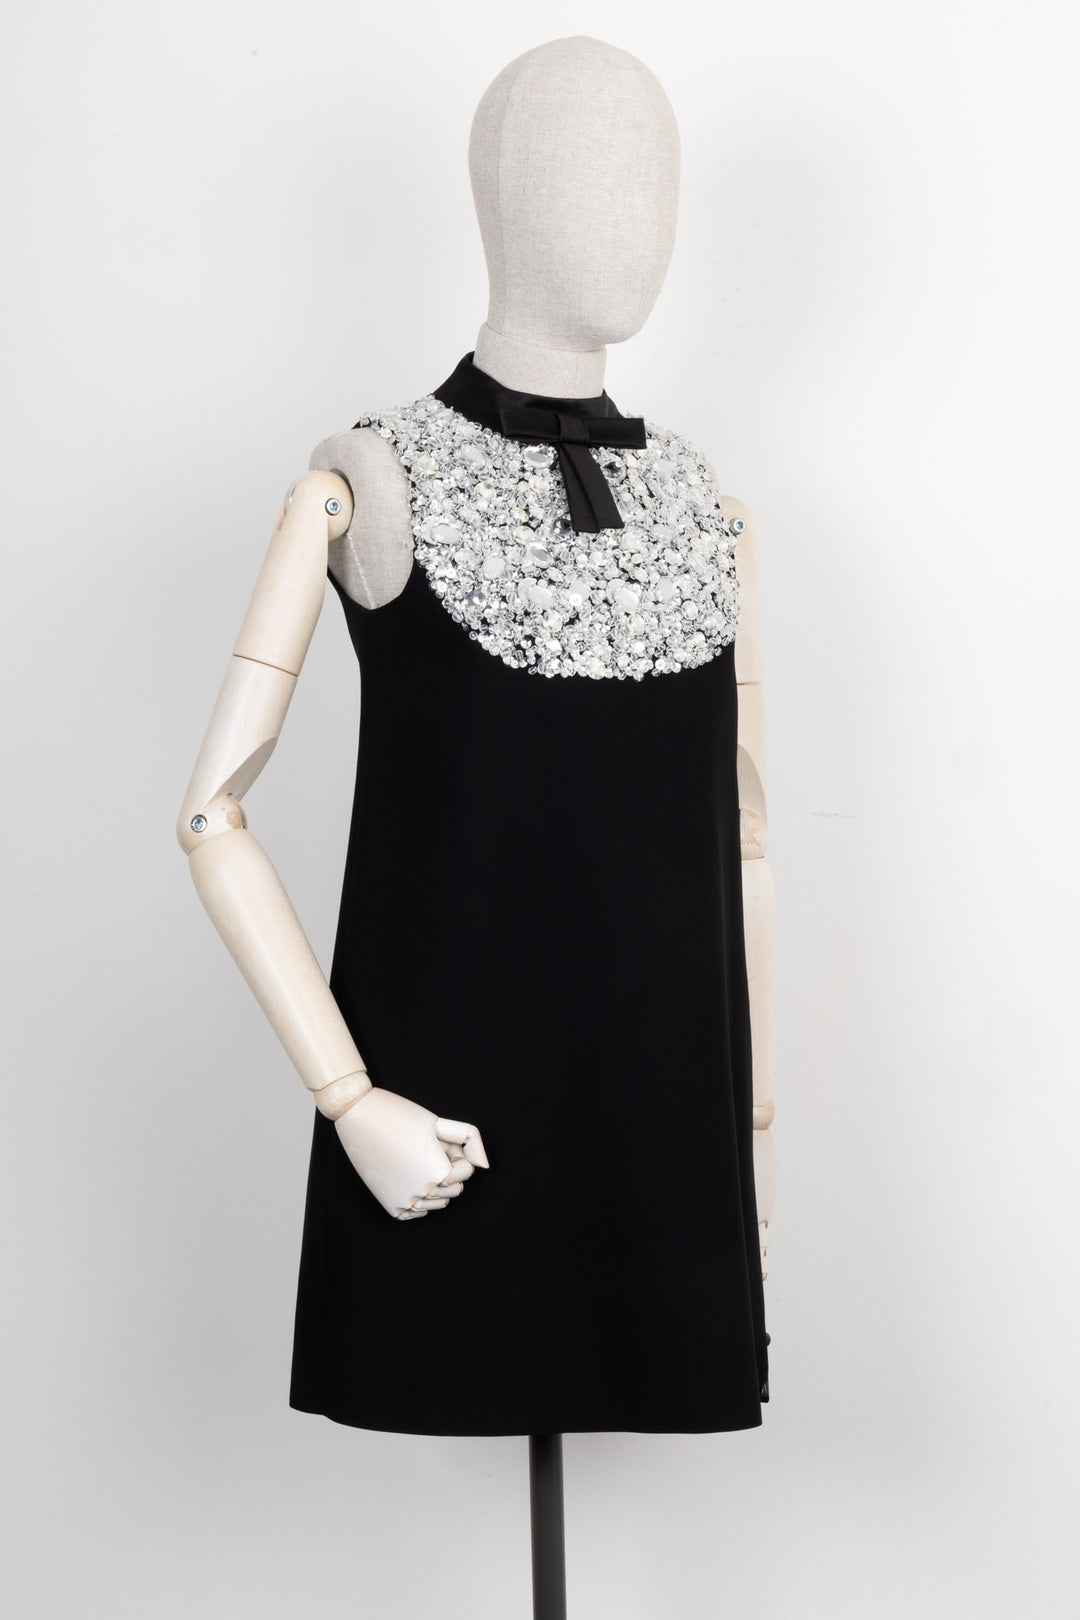 PRADA Crystal Embellished Dress Black